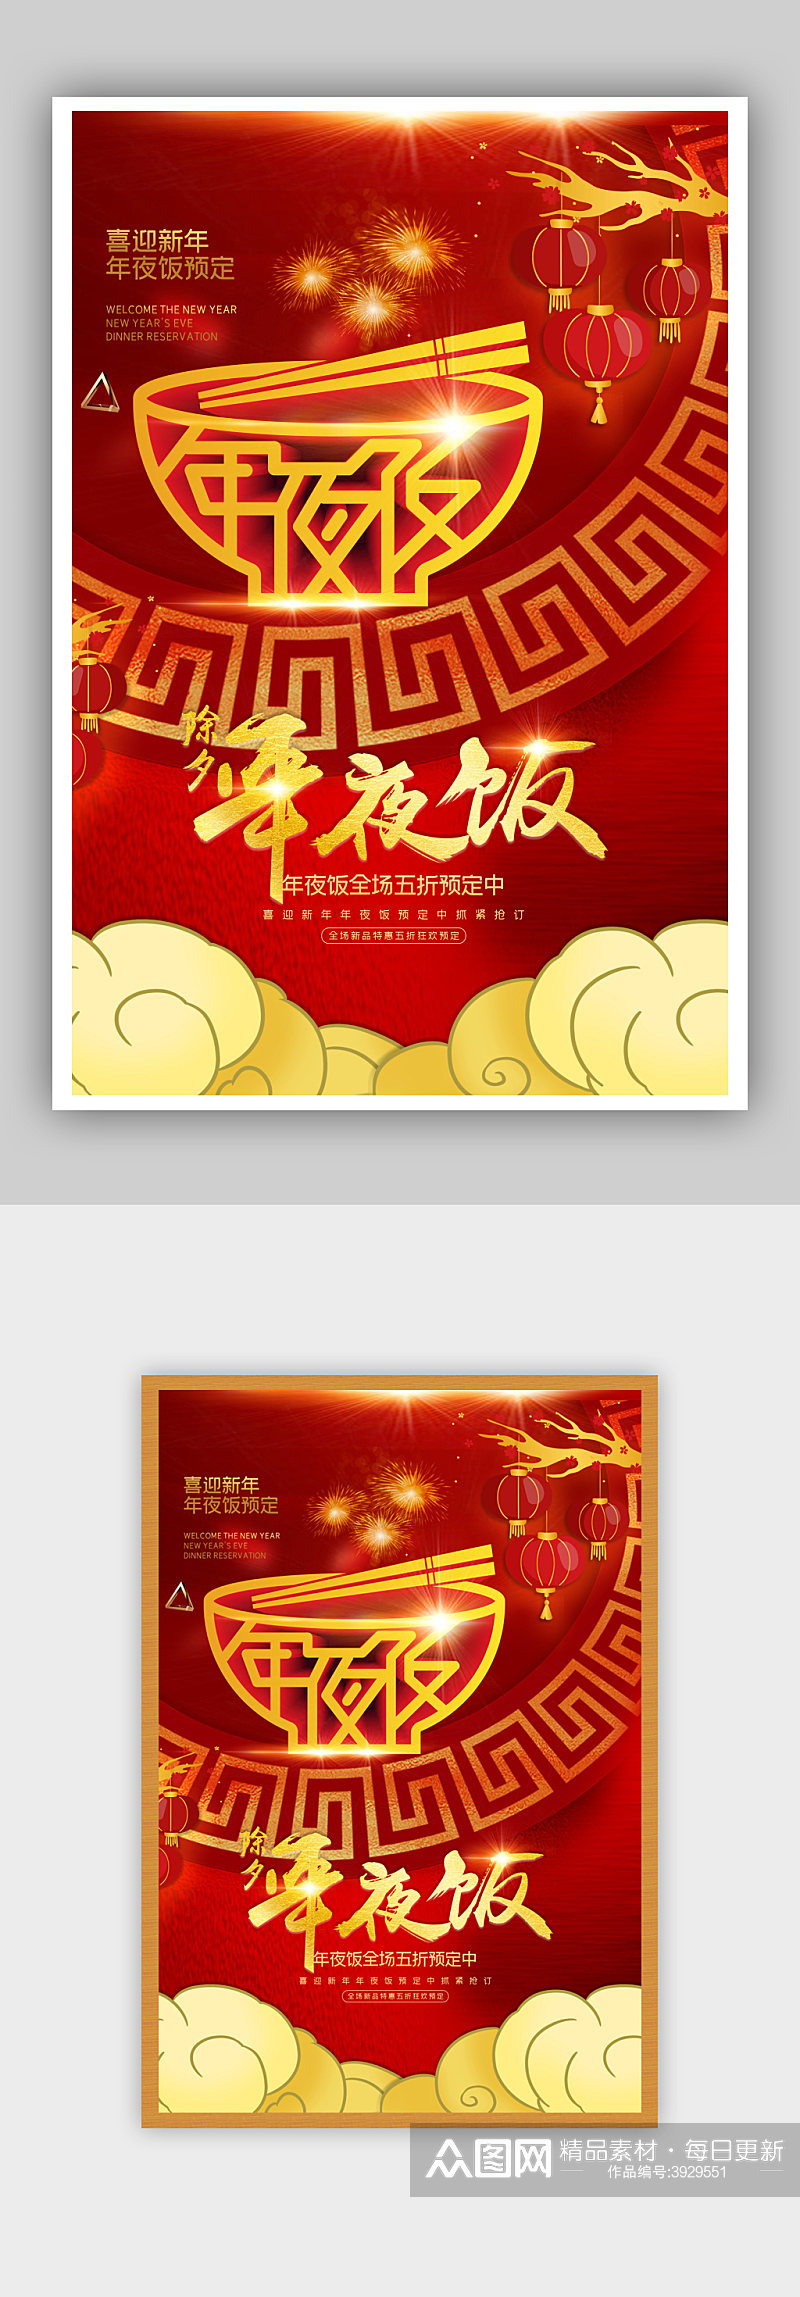 红色喜庆年夜饭预订美食促销海报素材